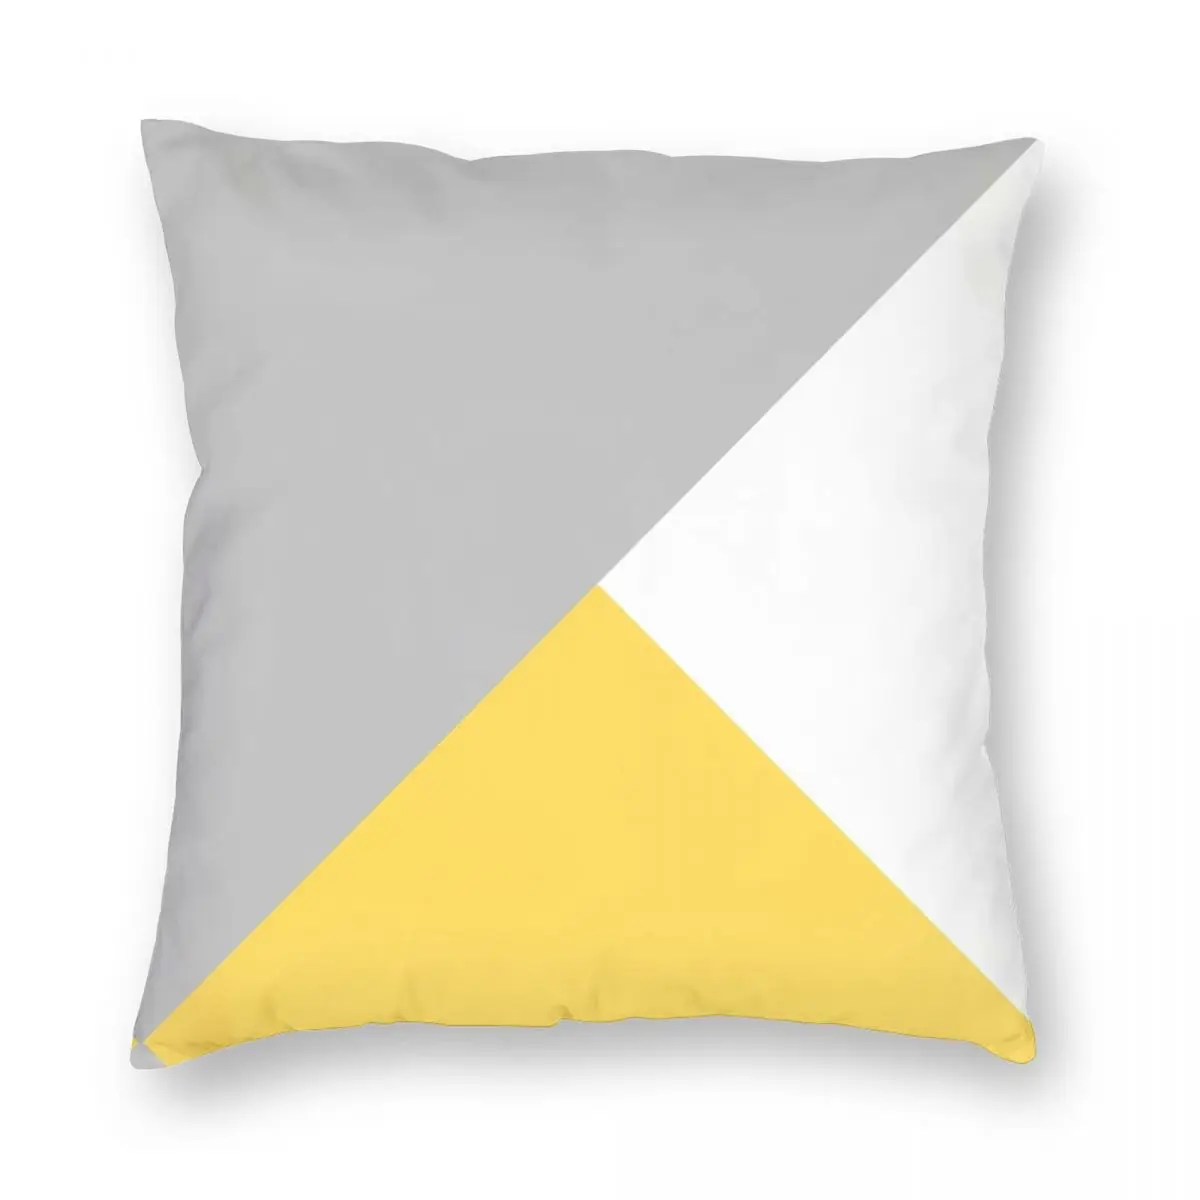 

Трехцветный серебристый, серый, горчичный, желтый, белый квадратный чехол для подушки, чехол из полиэстера, льна, бархата, креативный декоративный чехол на молнии для автомобильной подушки